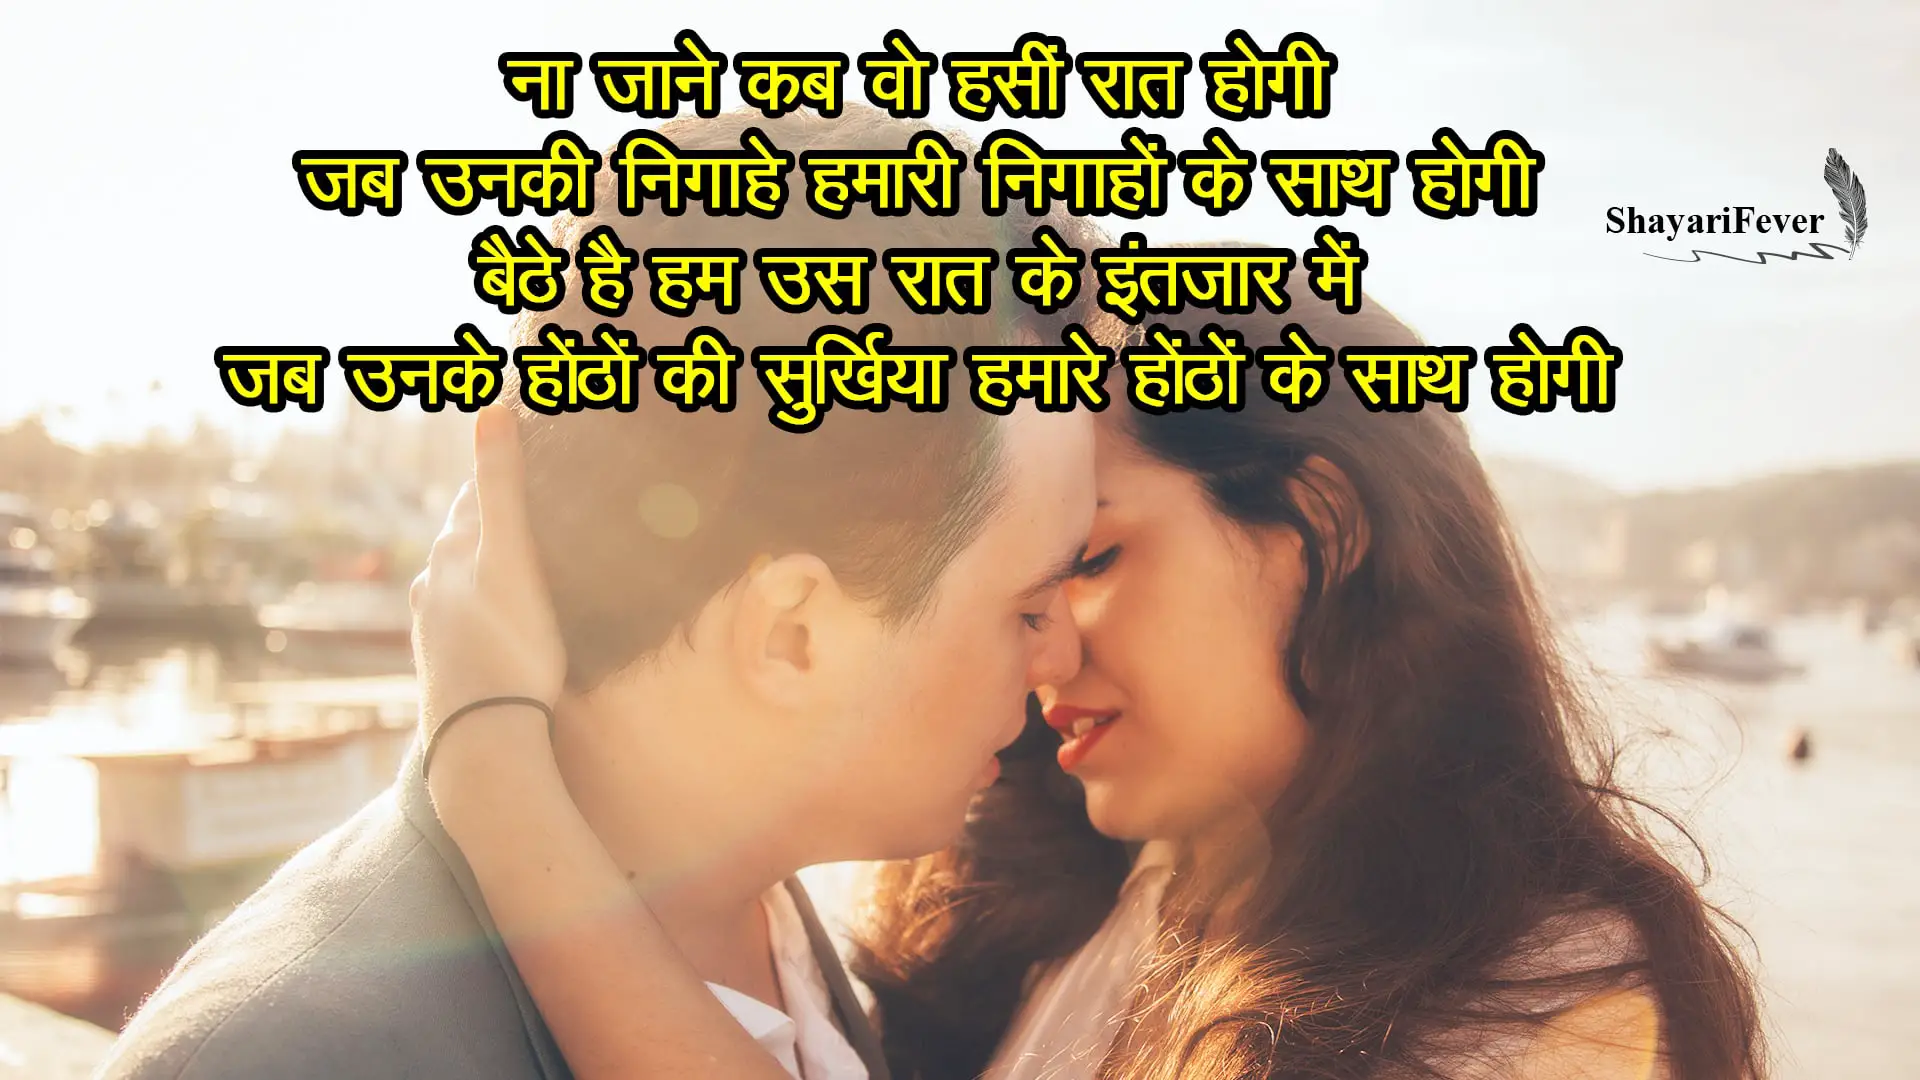 Kiss Day Hindi 2019